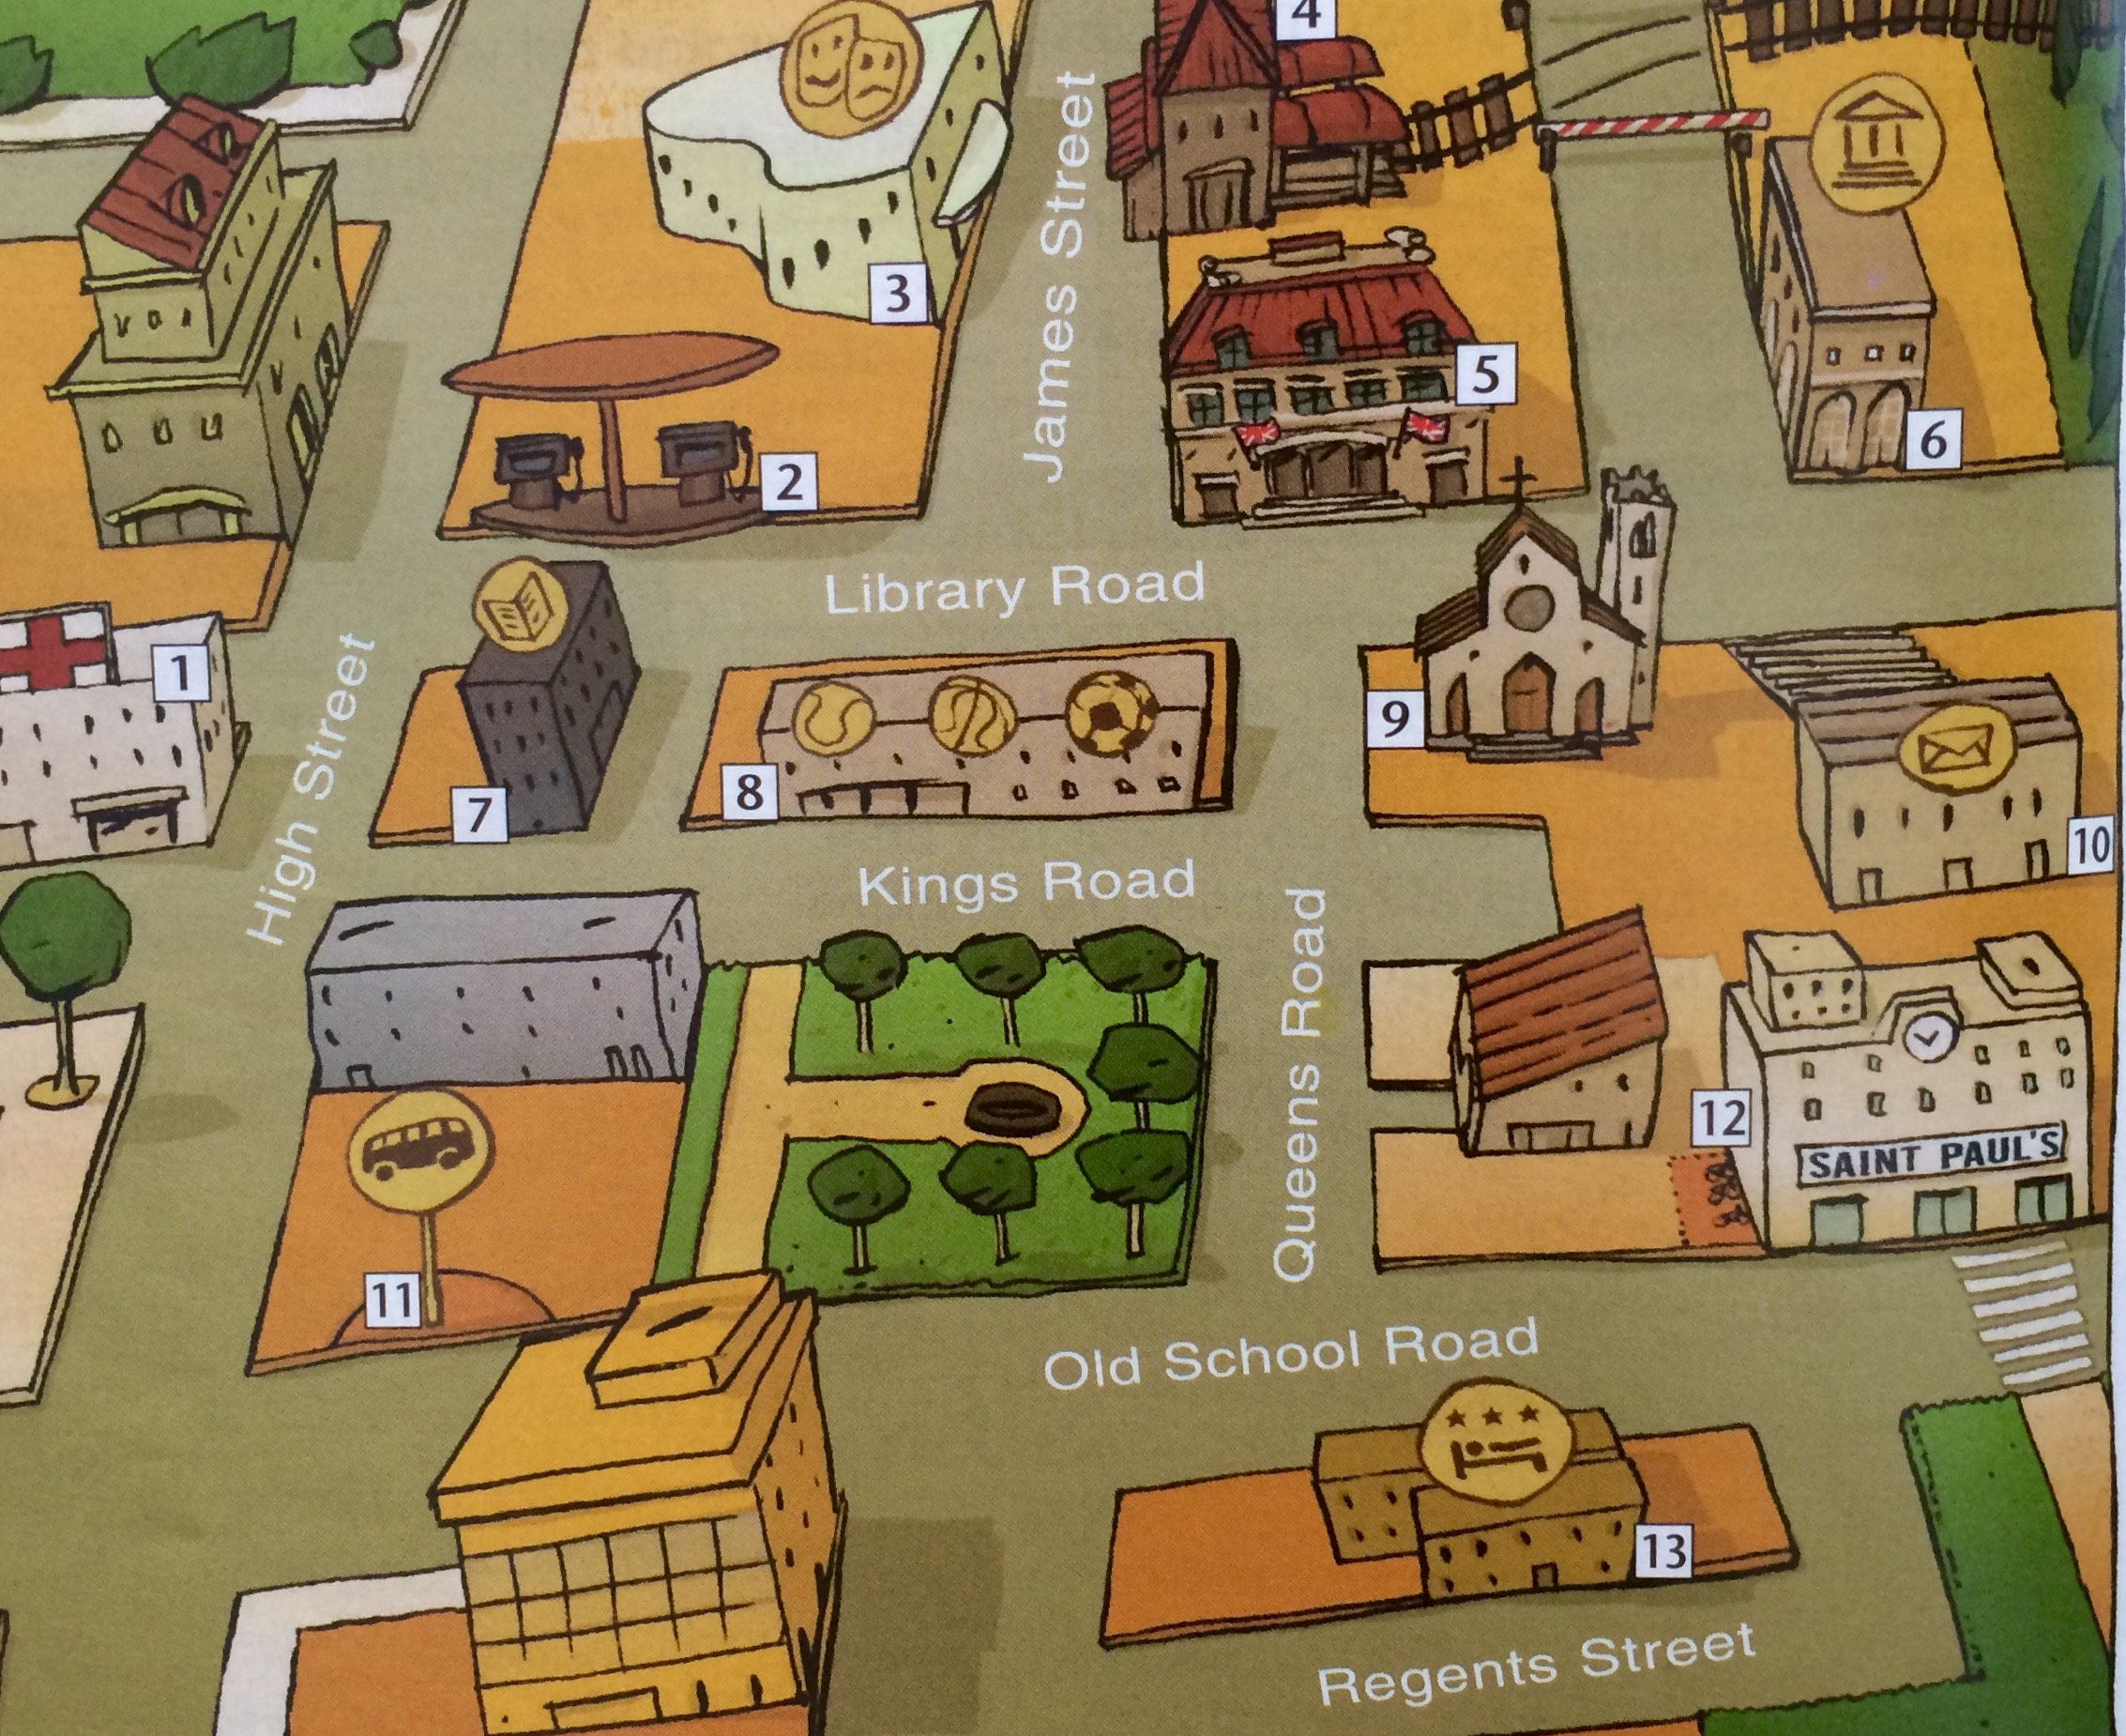 This part of town. План города на английском. План города для детей. Карта города для детей. Нарисованная карта города.